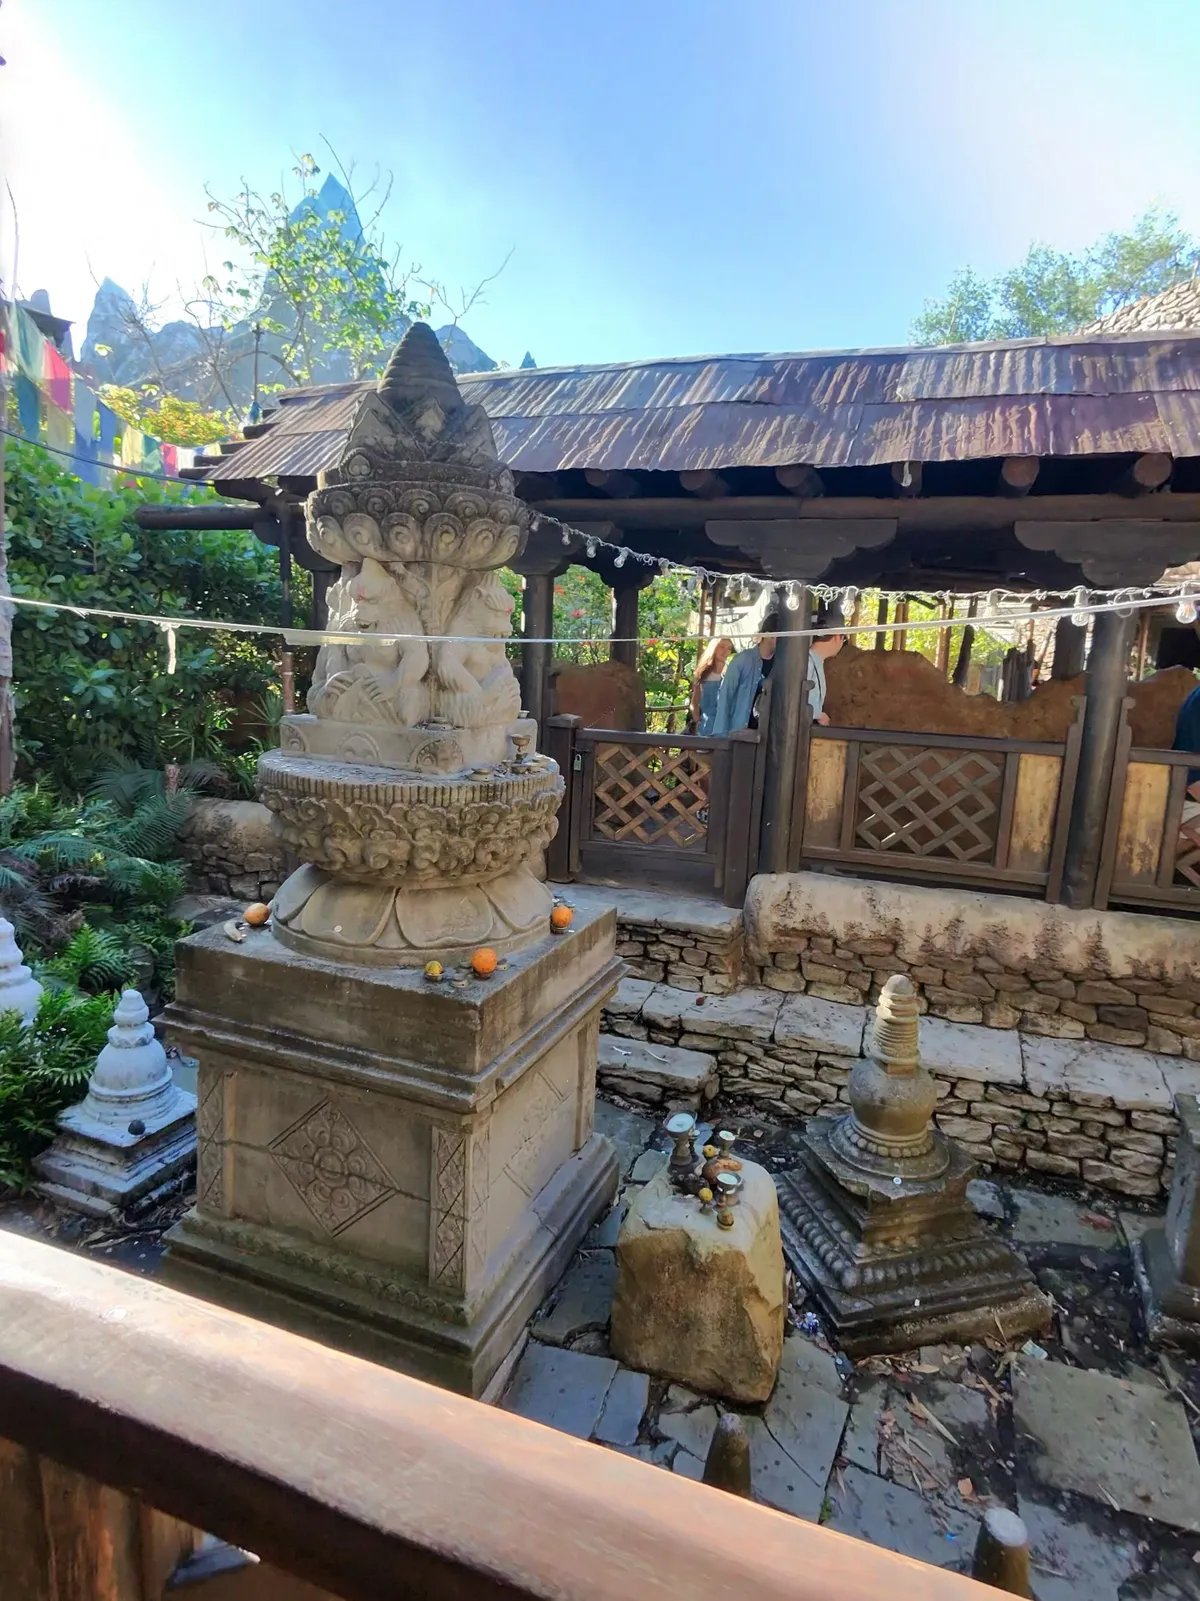 一张古老庭院的照片，这是迪士尼主题公园游乐设施的一部分